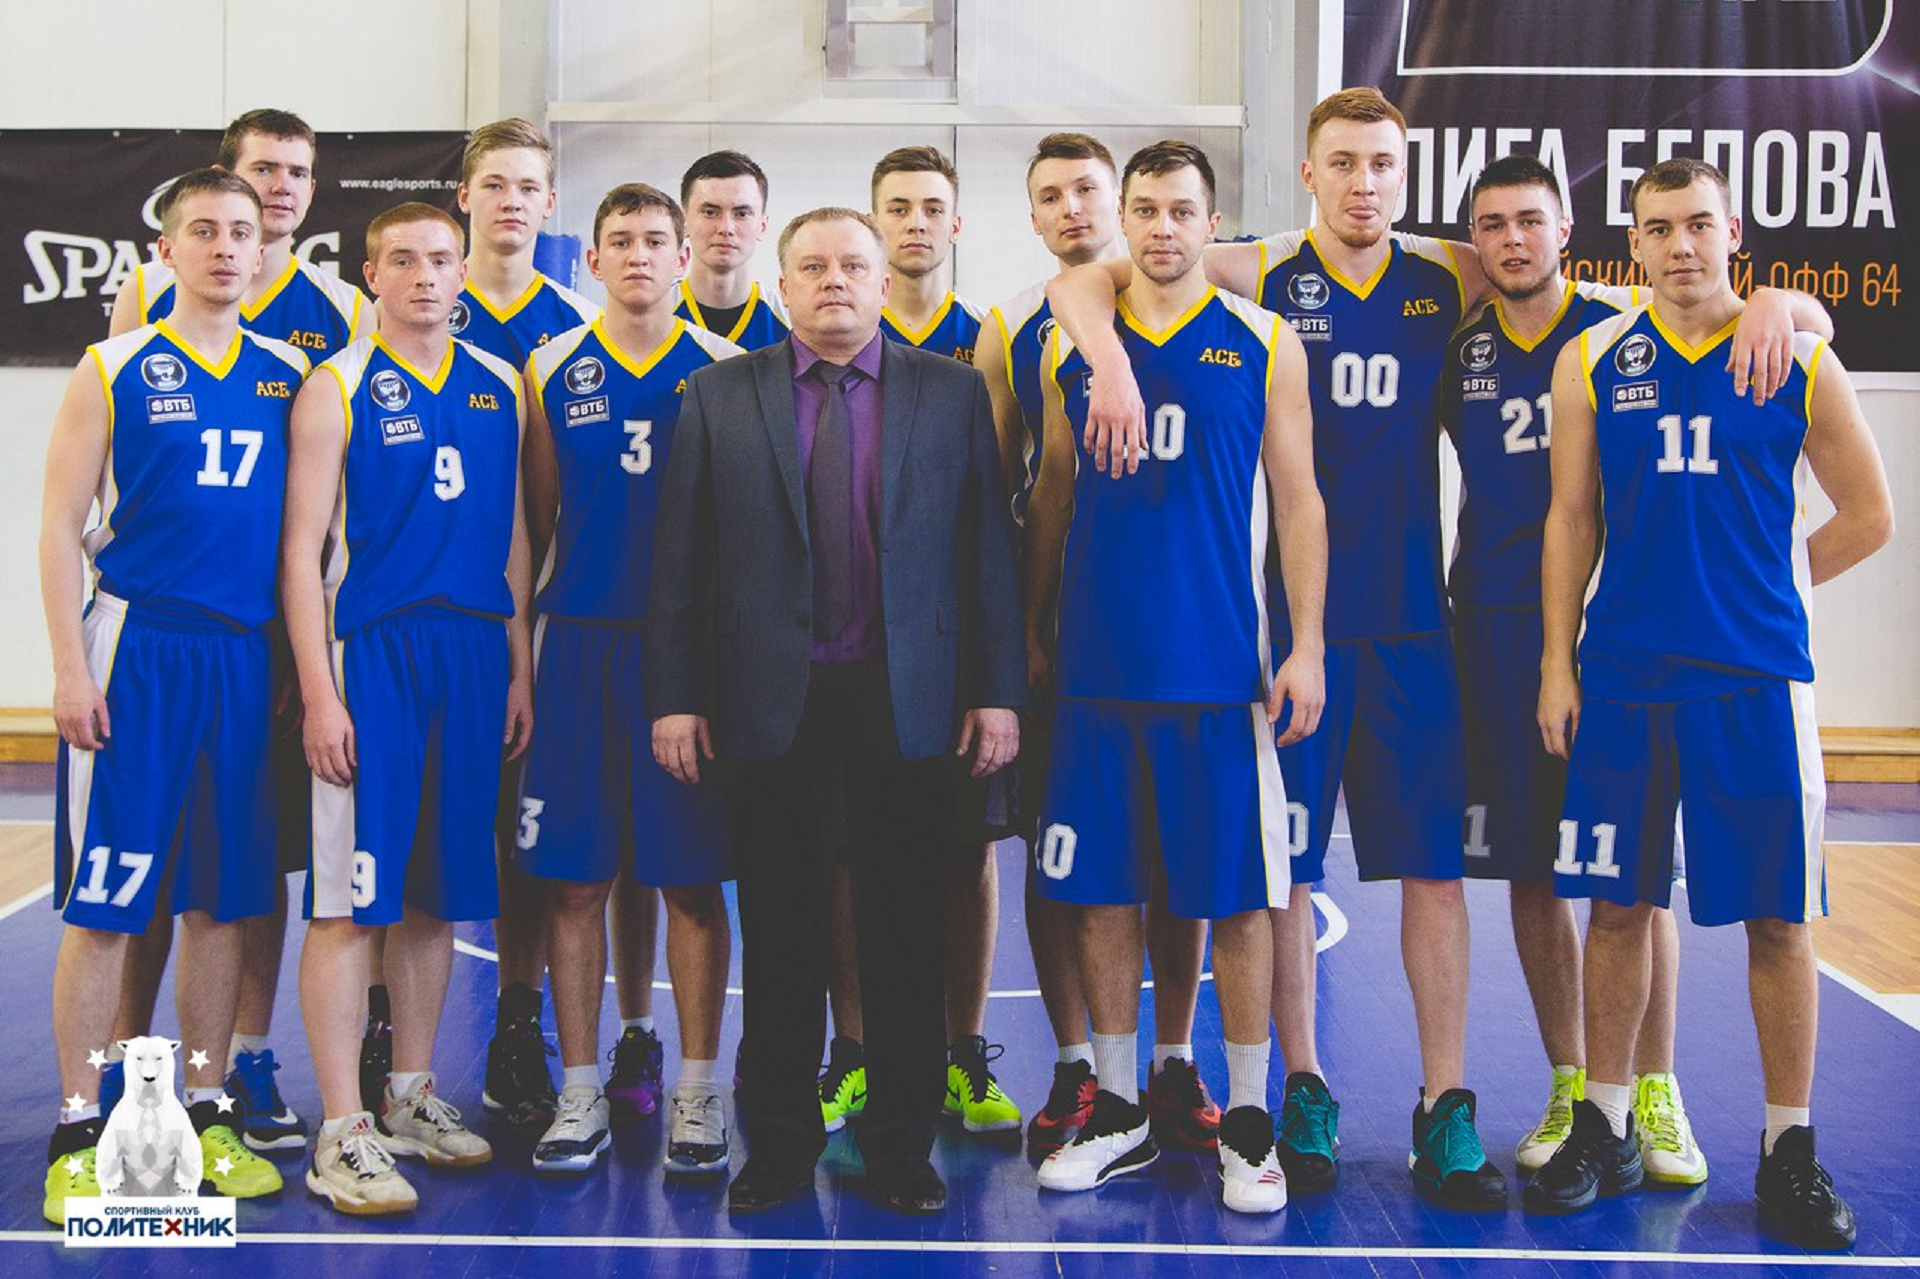 Мужская студенческая команда ВятГУ вошла в ТОП 32 Чемпионата АСБ